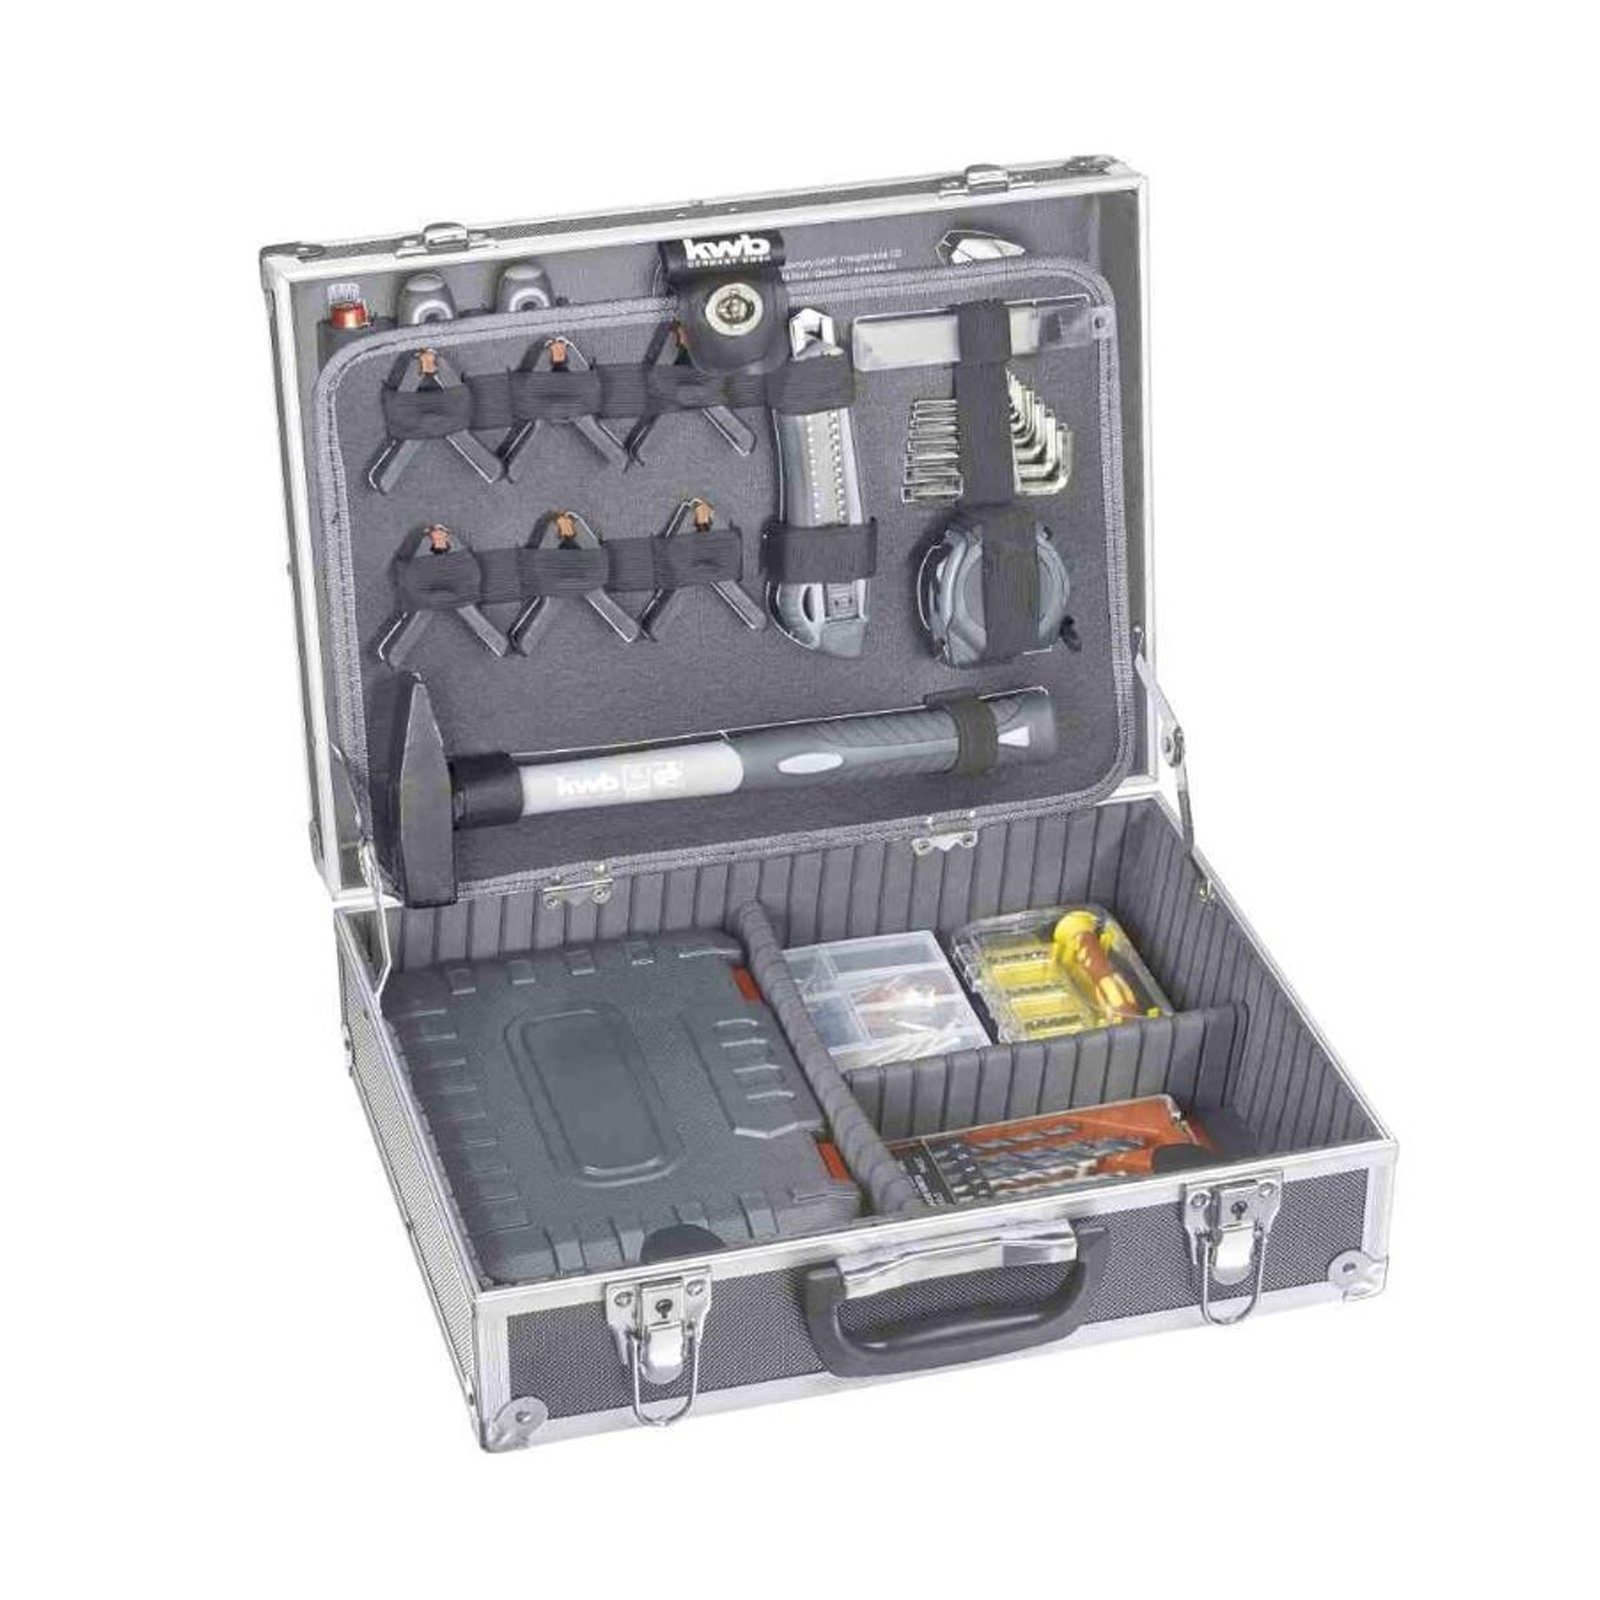 199-teilig, gefüllt, Werkzeug-Koffer kwb Werkzeugset Werkzeug-Set, inkl. und robust